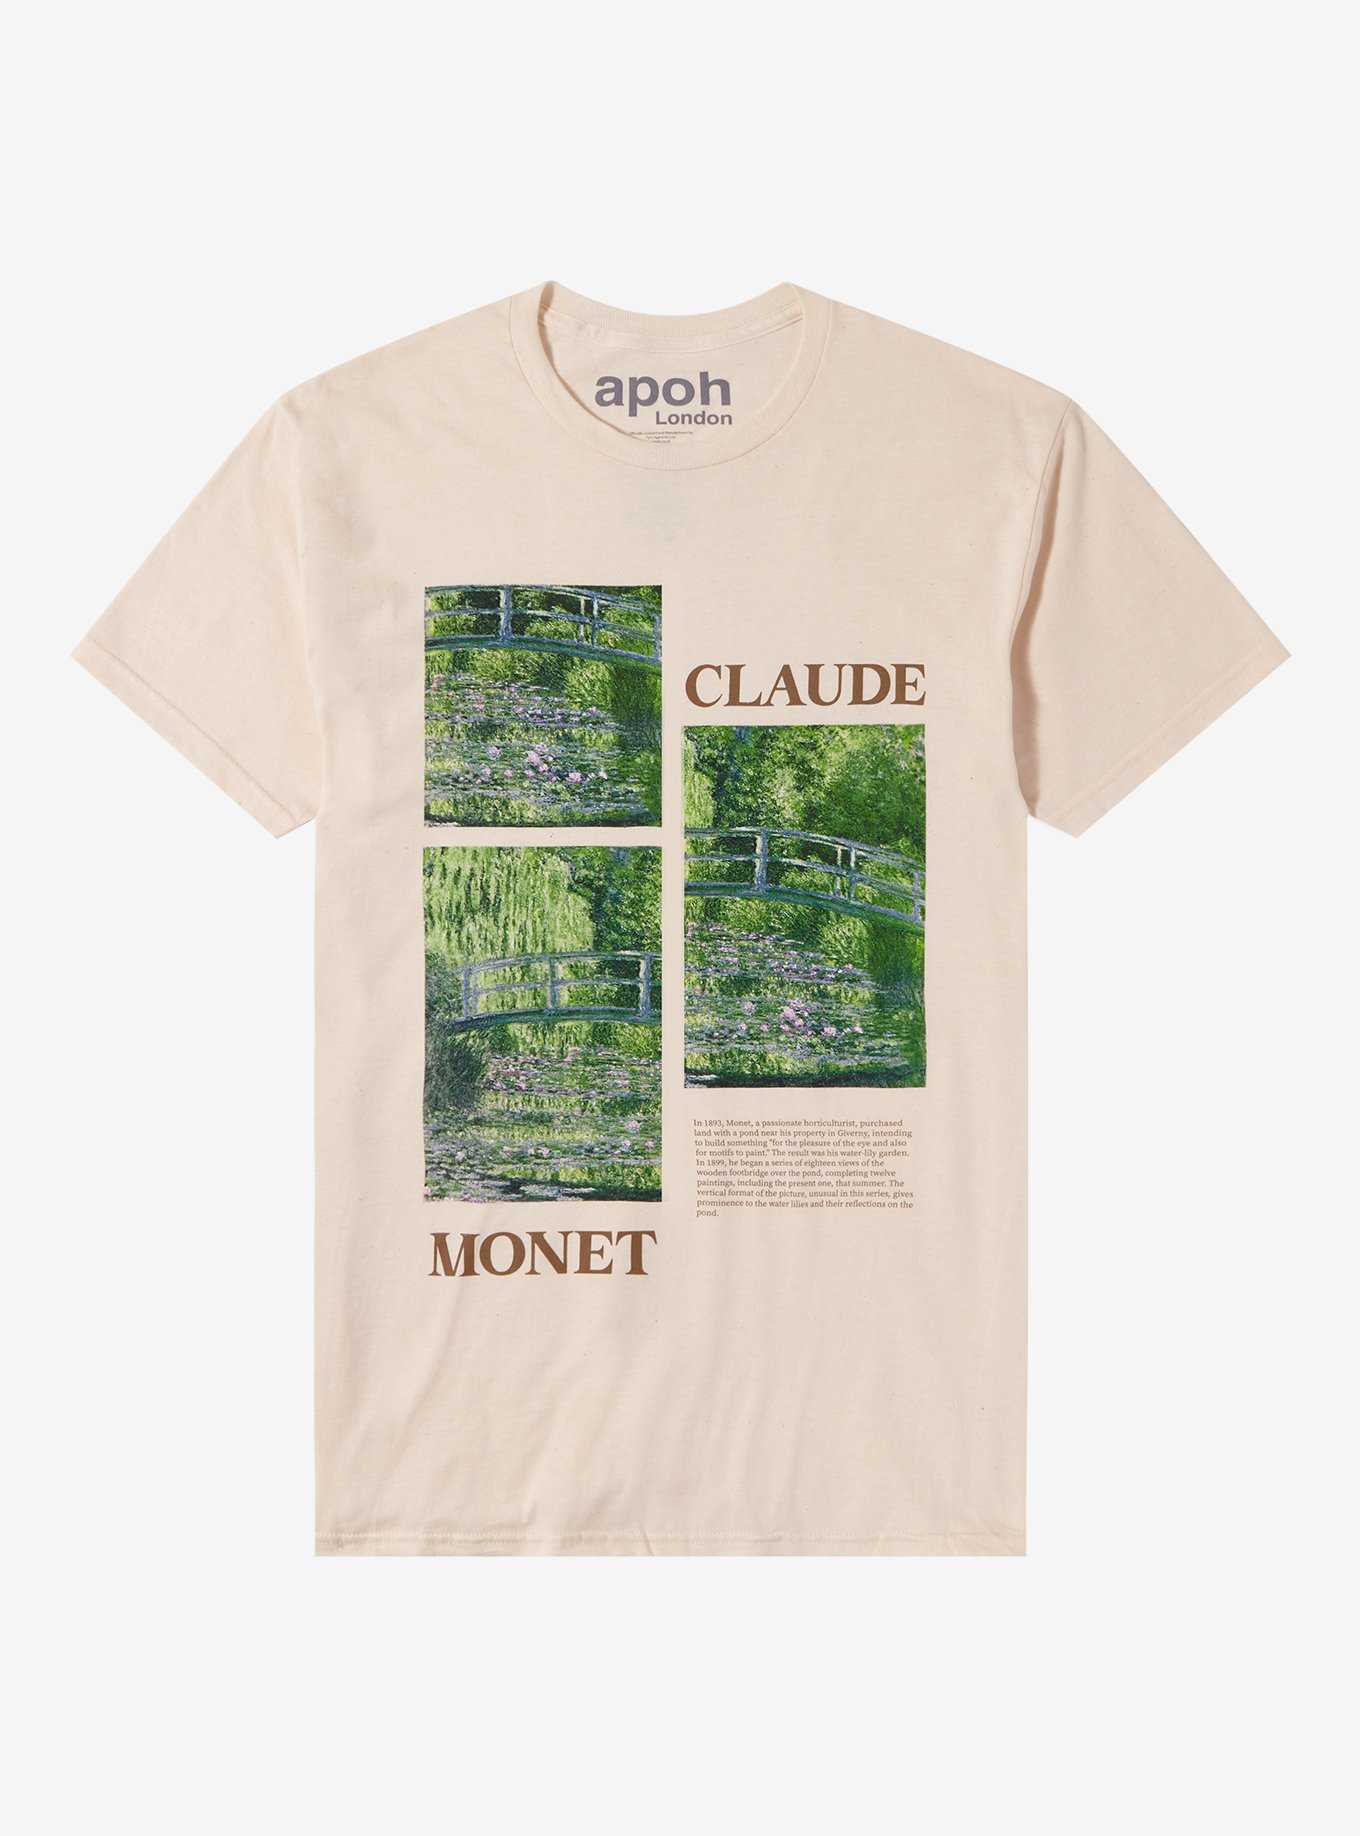 Apoh London Claude Monet Panel Boyfriend Fit Girls T-Shirt, , hi-res